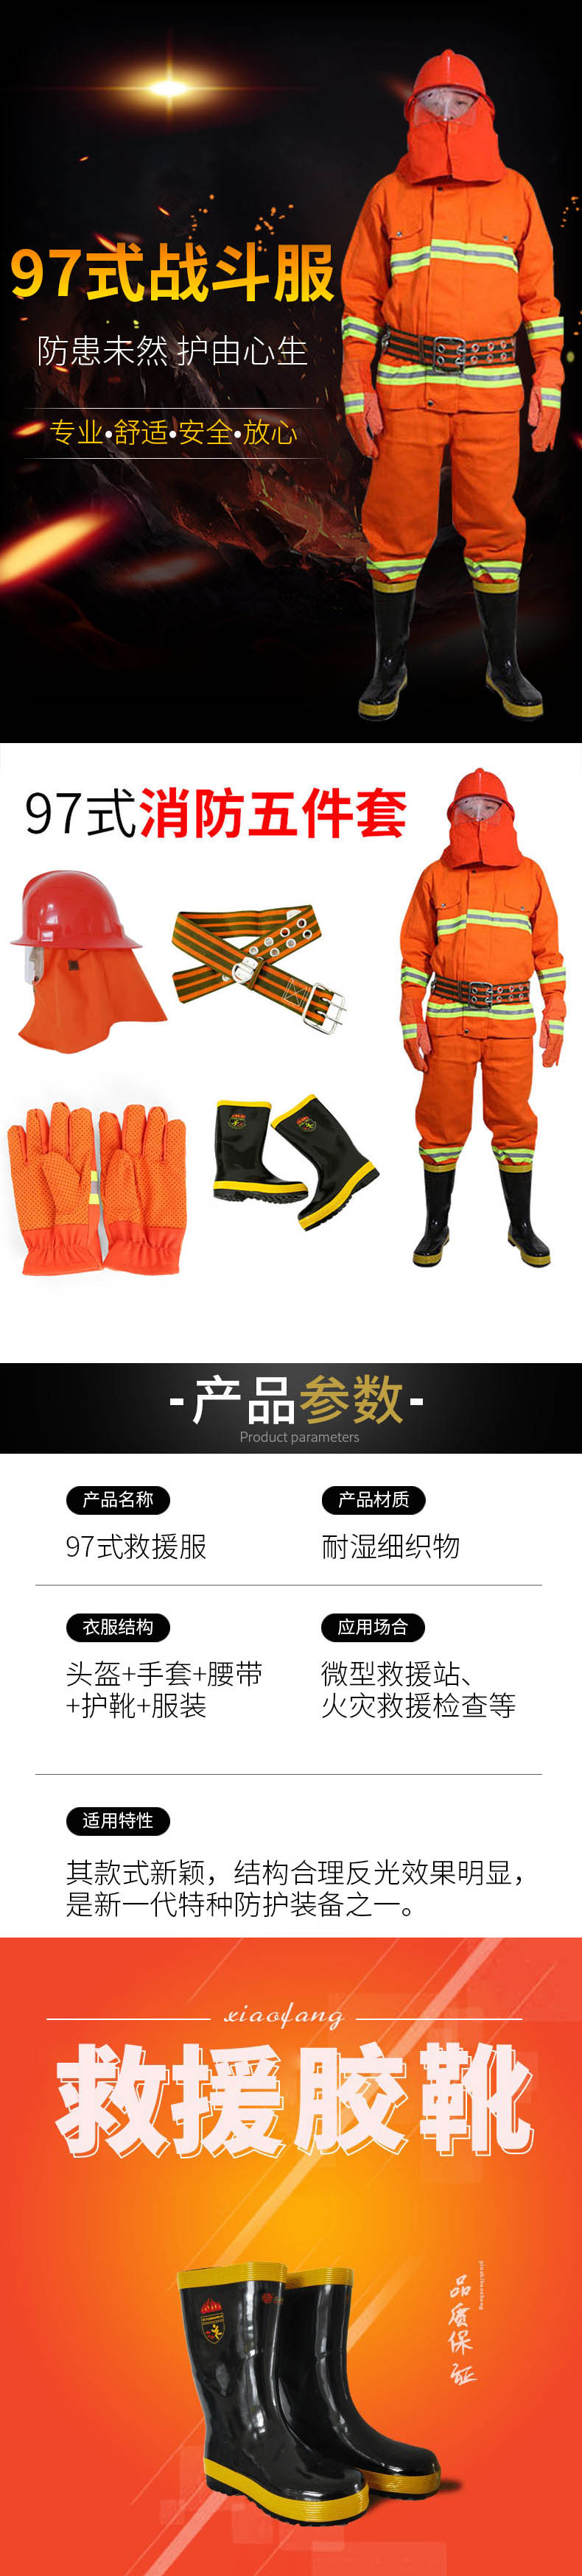 宇安消防 97式战训服橘红色五件套图片1